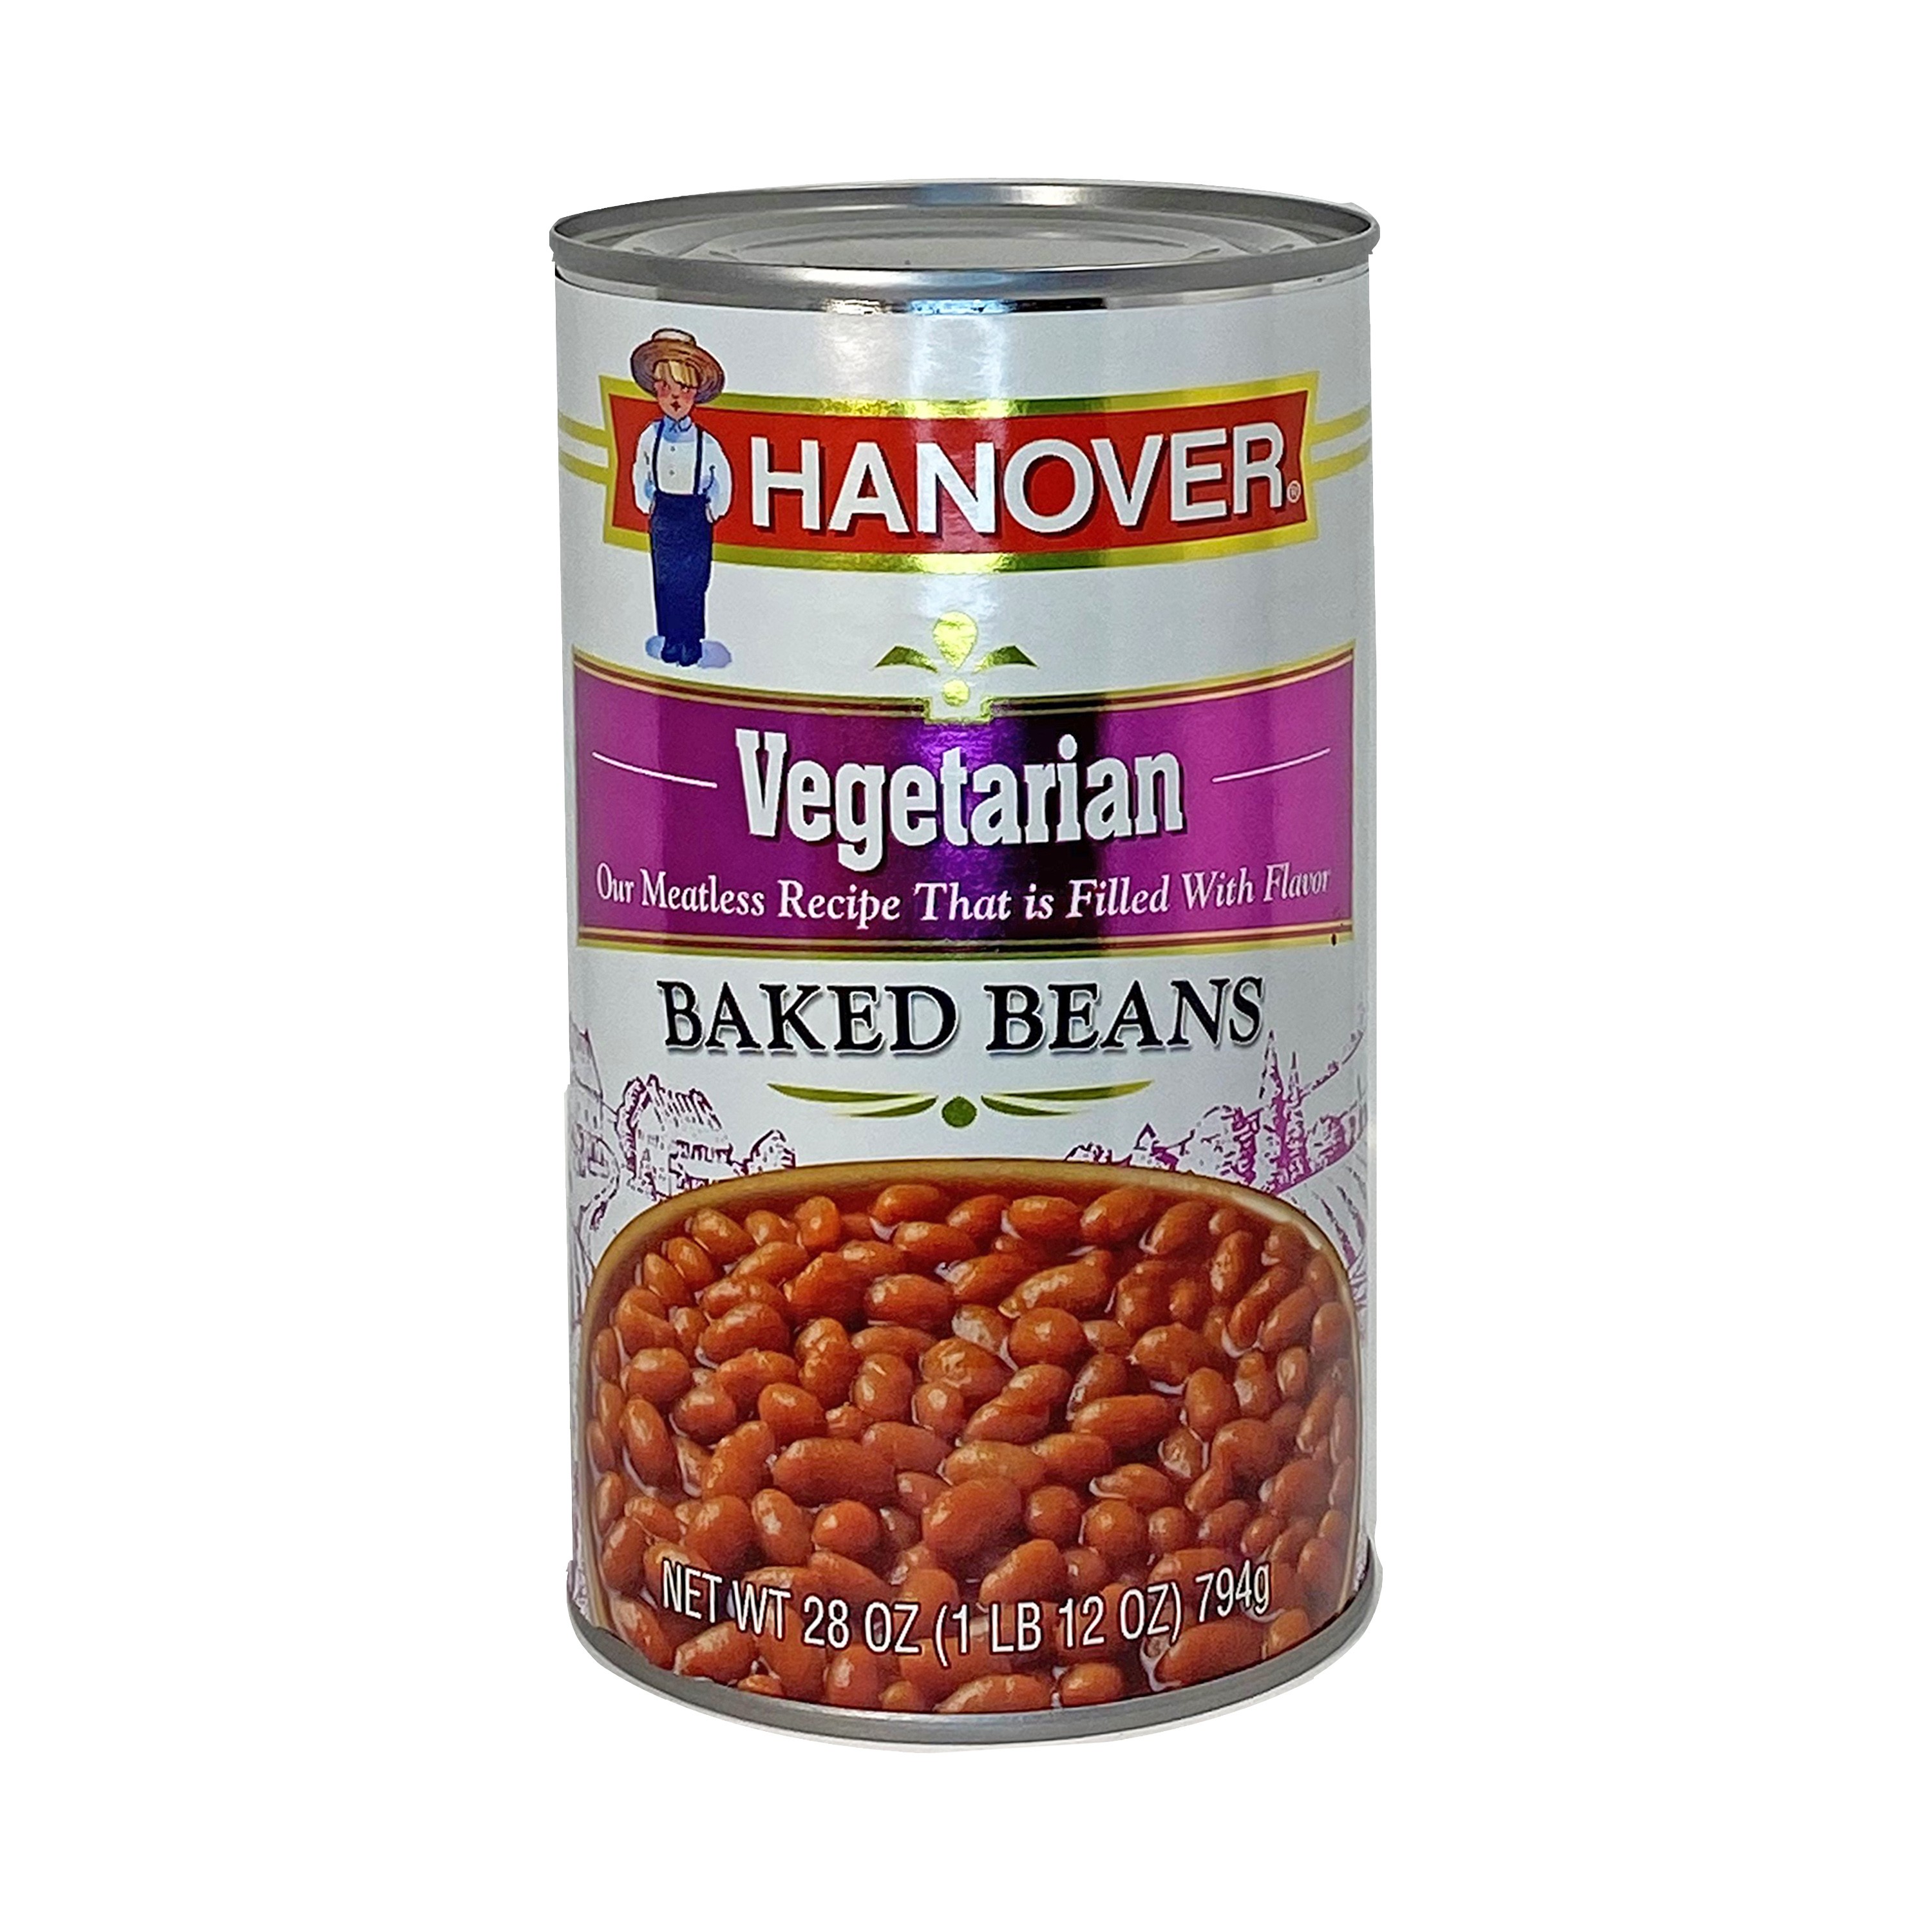 Hanover Baked Beans Vegetarian 28oz 28800-13074-1 side 01